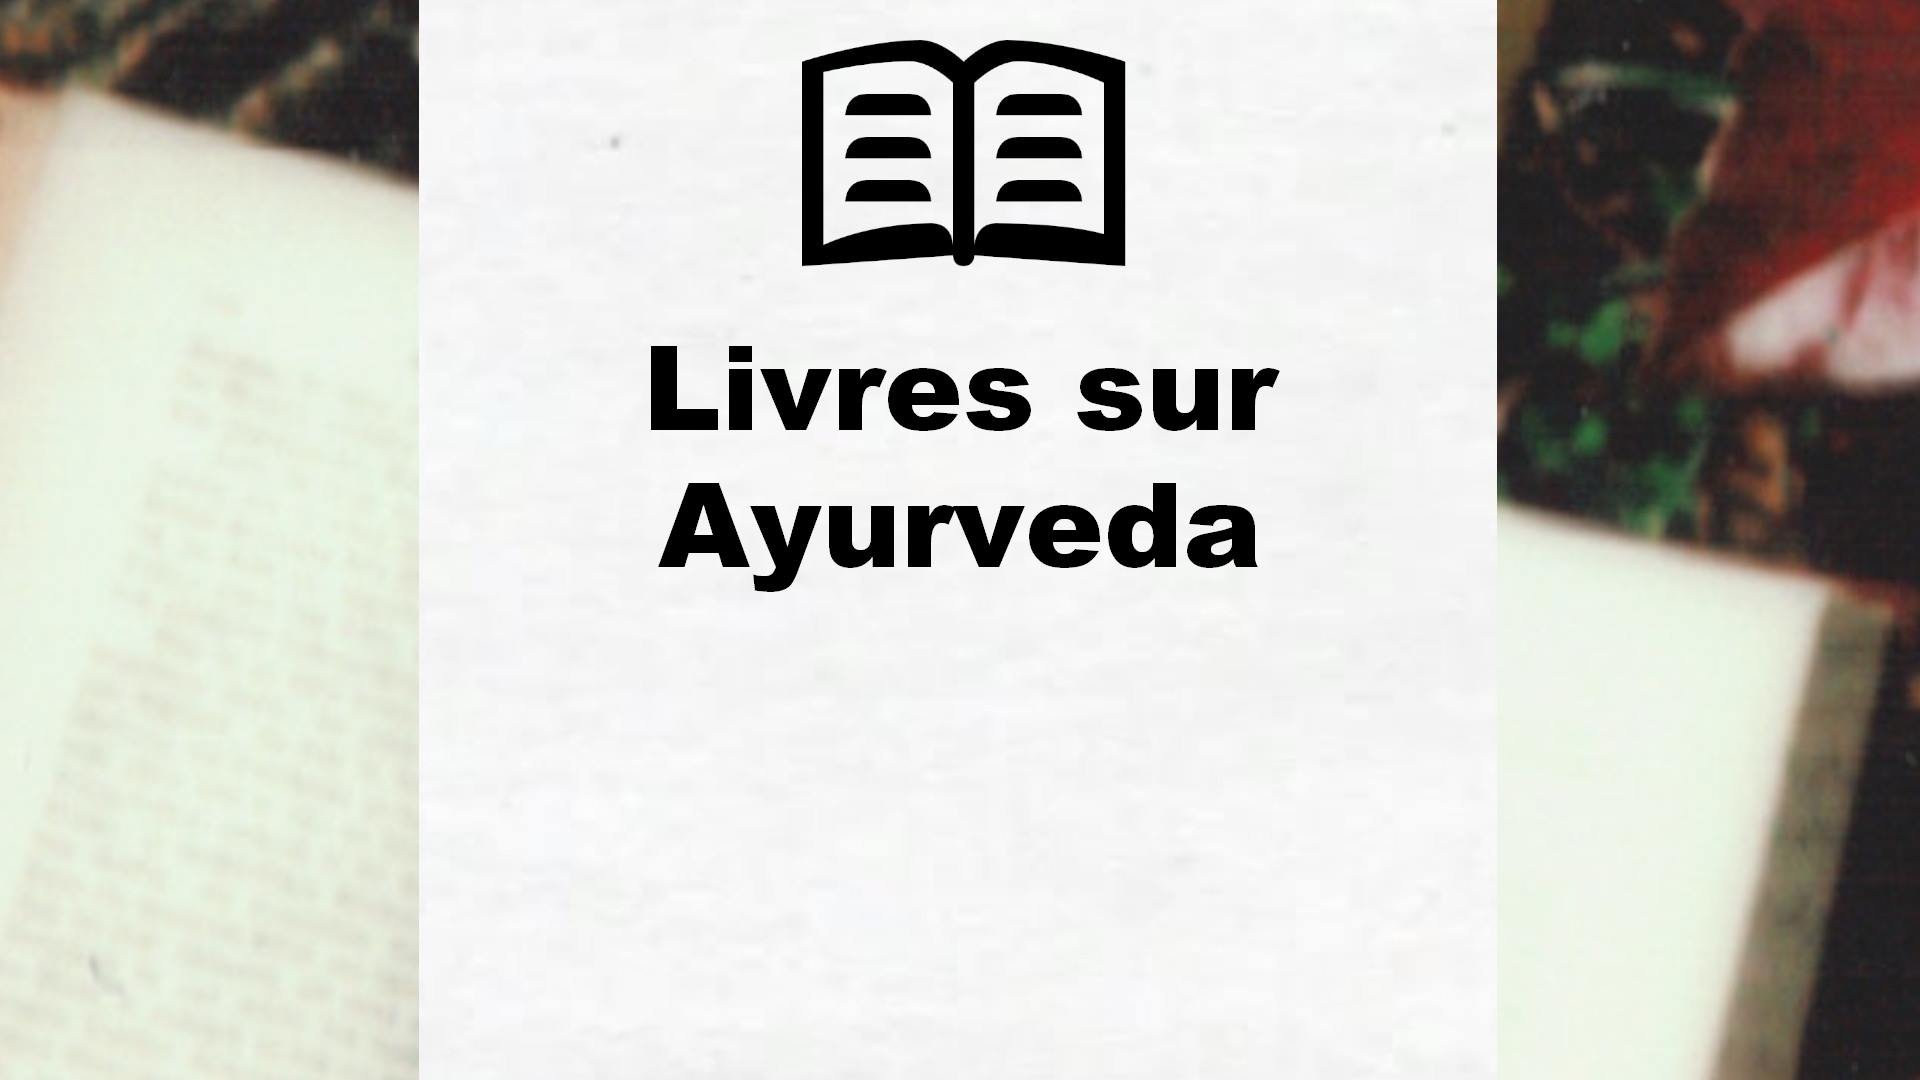 Livres sur Ayurveda